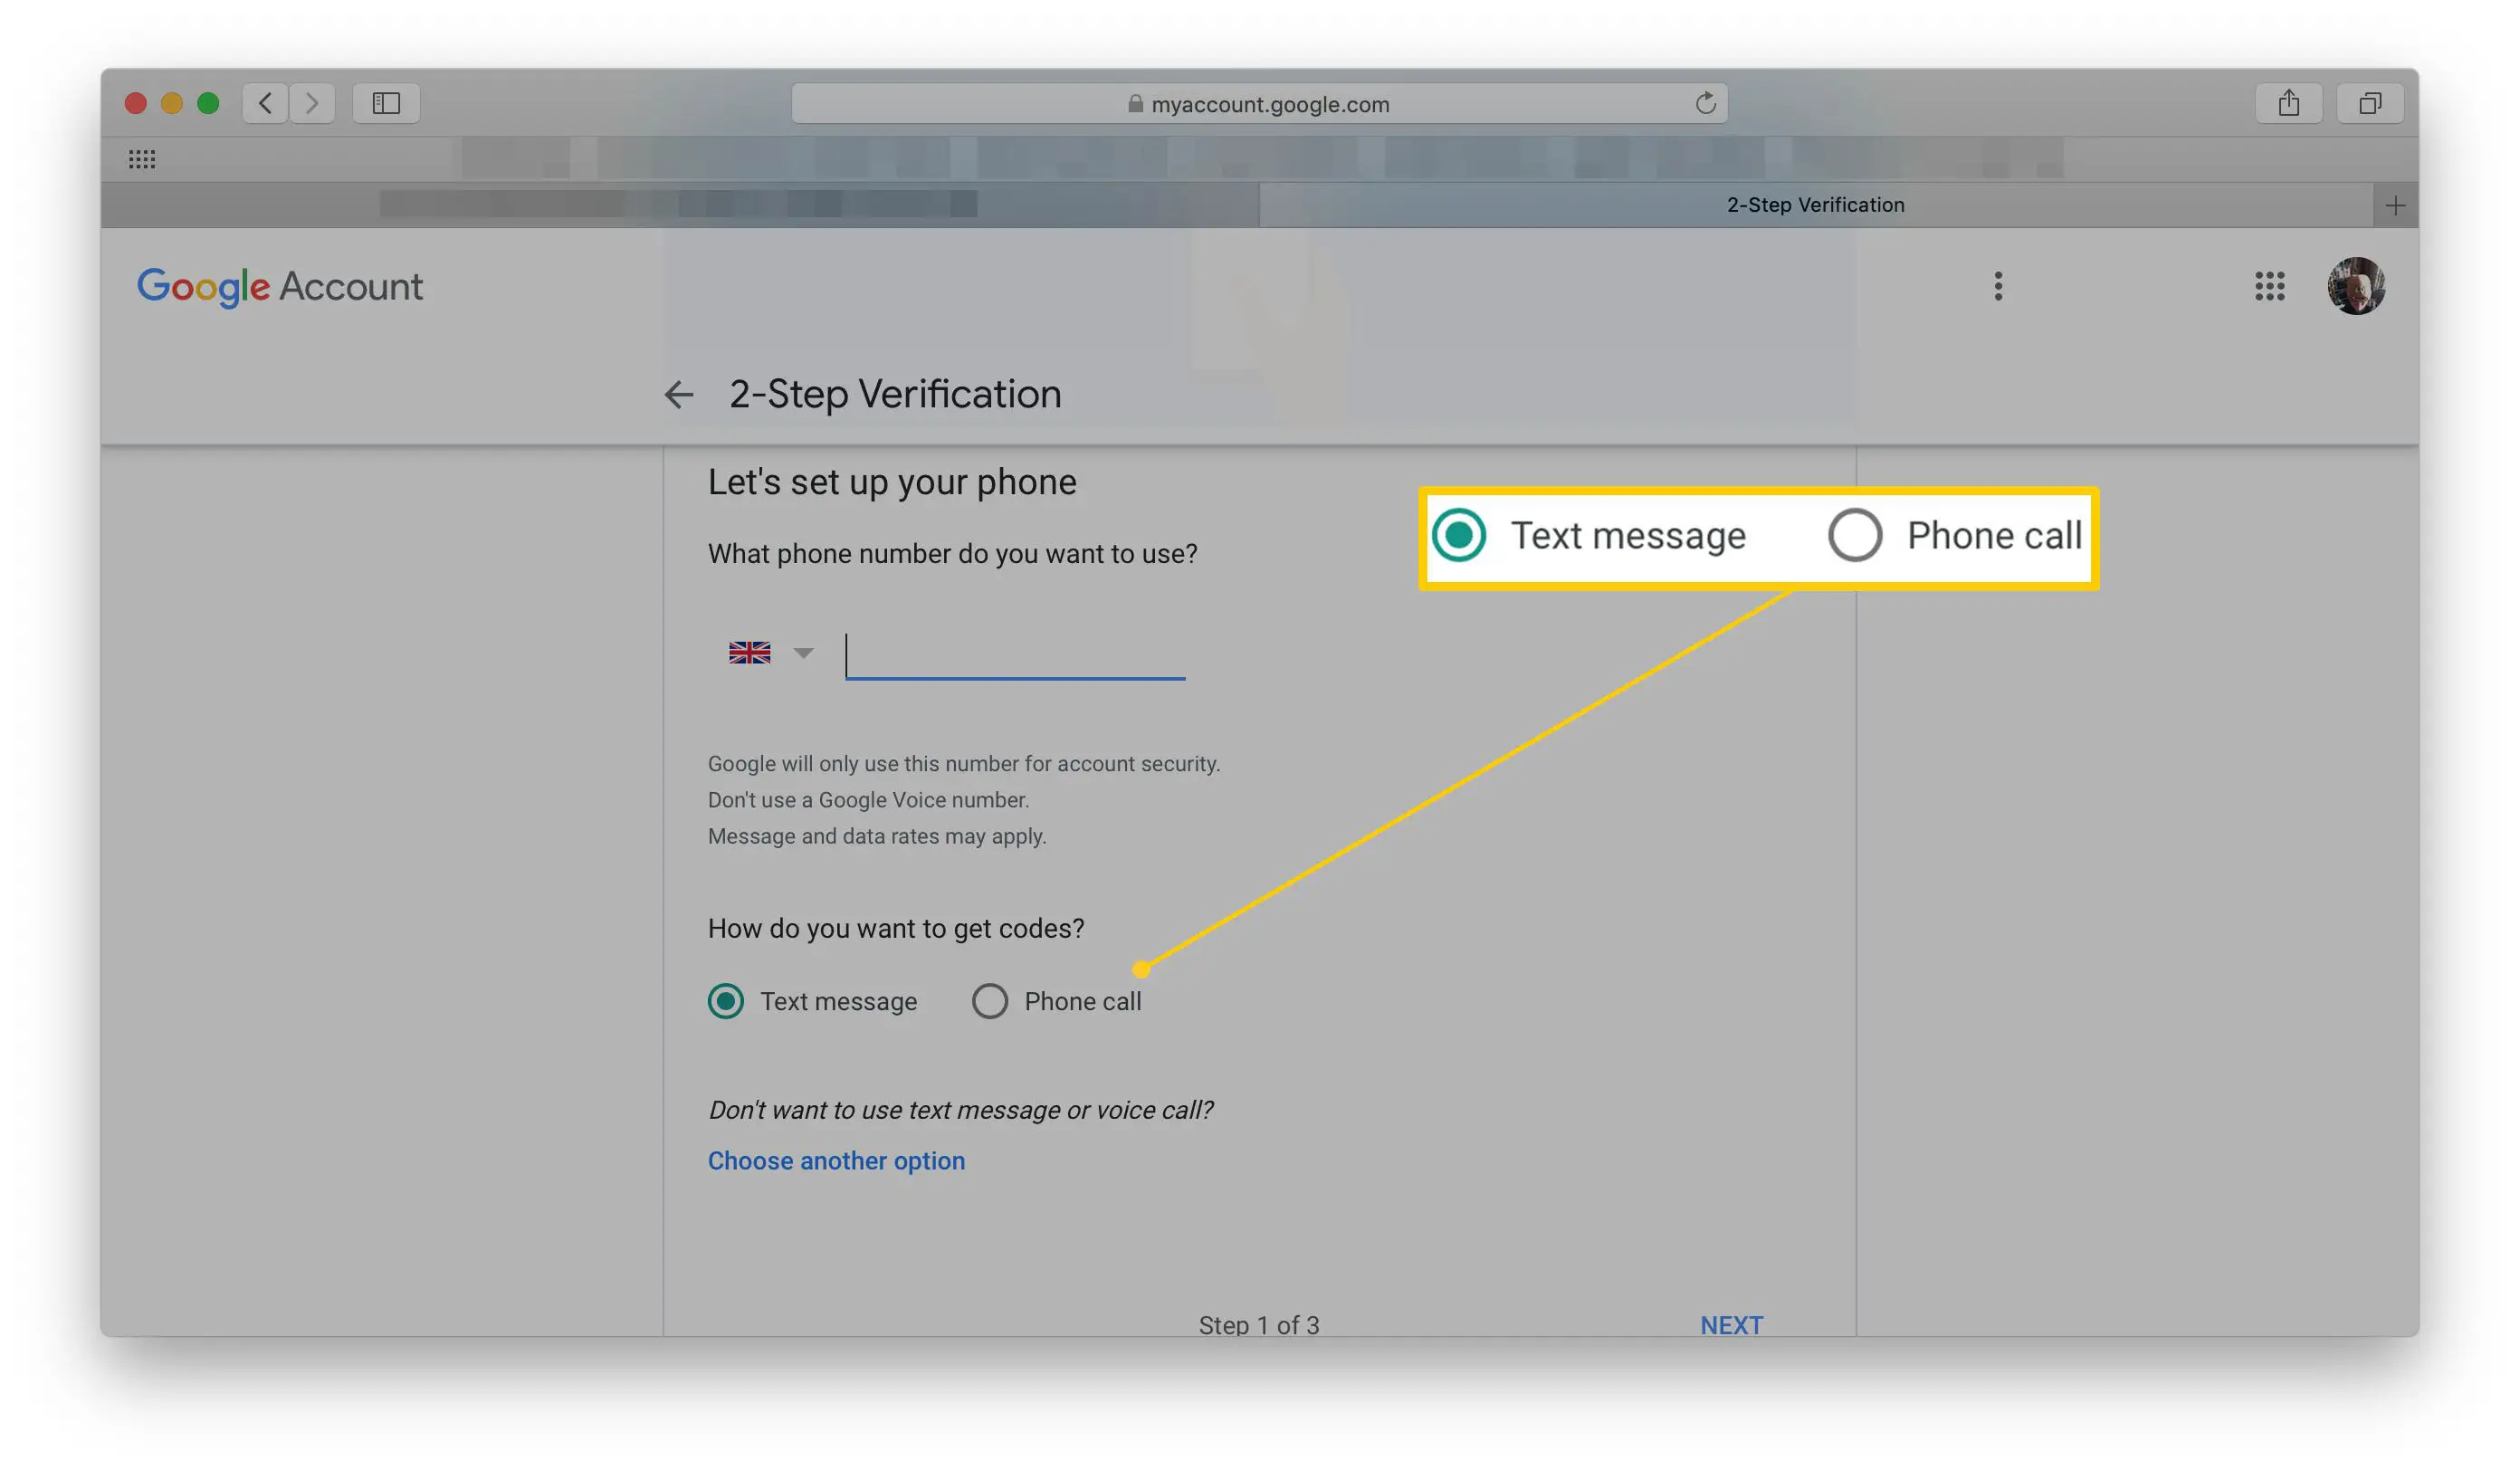 Página de verificação em duas etapas do Google - opções de mensagem de texto ou chamada telefônica destacadas